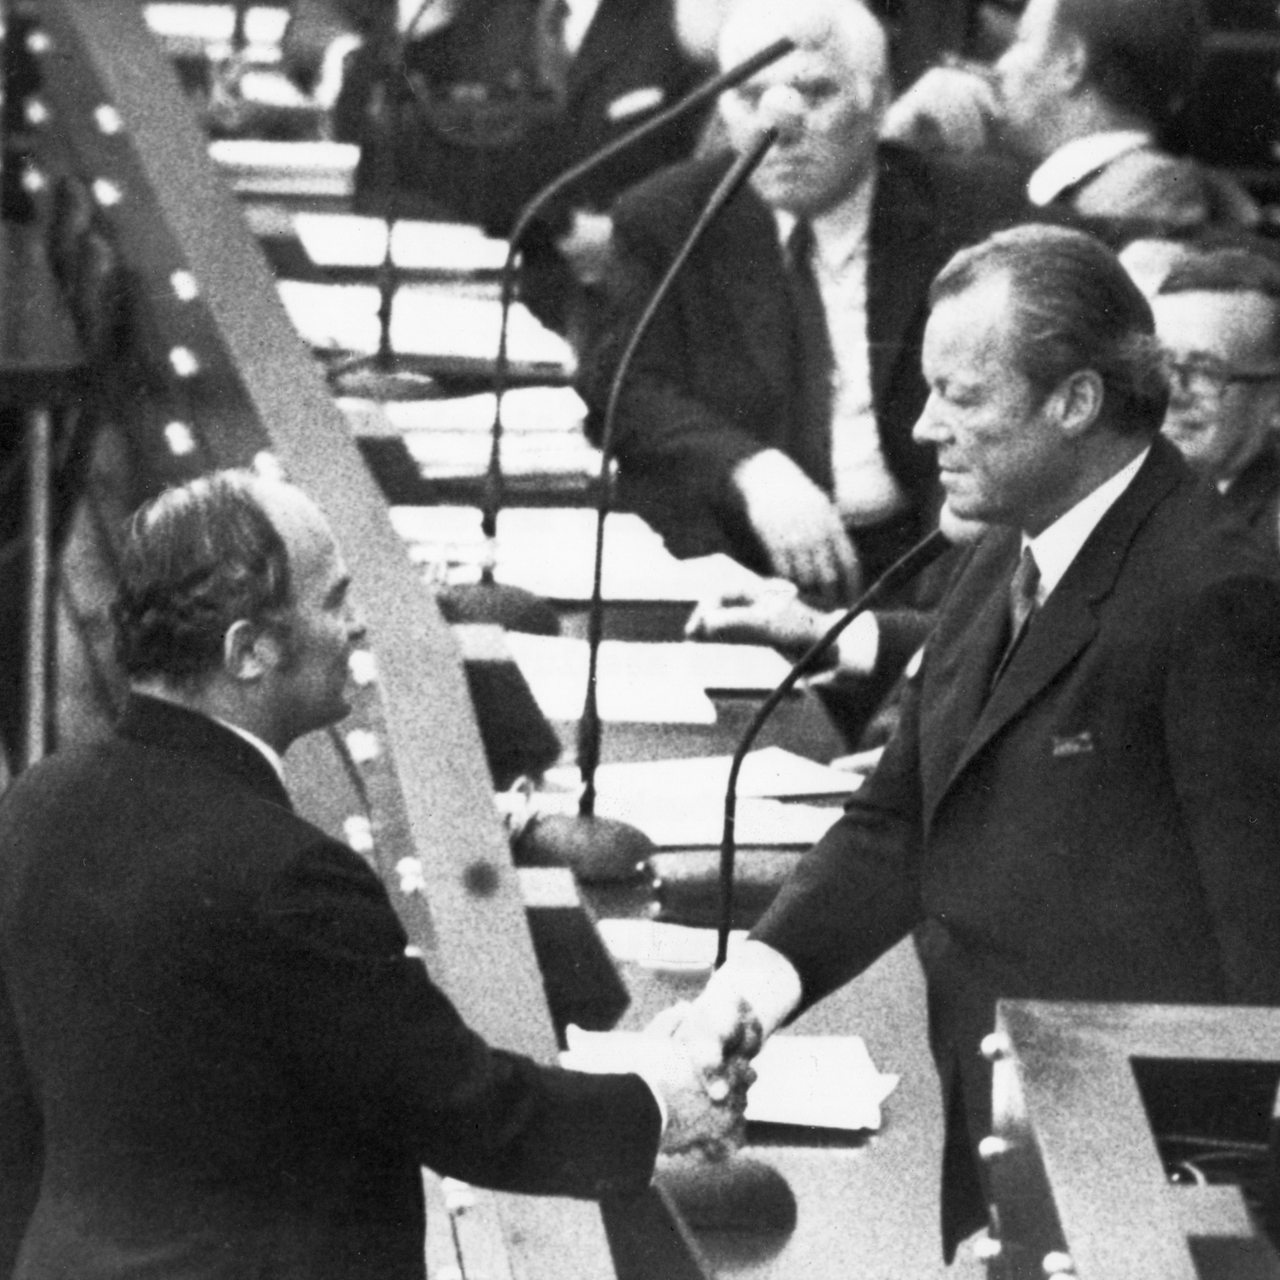 Der Unterlegene Rainer Barzel (CDU, l) gratuliert am 27.04.1972 in Bonn Bundeskanzler Willy Brandt (SPD), nachdem das von der CDU/CSU-Bundestagsfraktion angestrengte Konstruktive Misstrauensvotum gegen Brandt im Bundestag gescheitert ist.